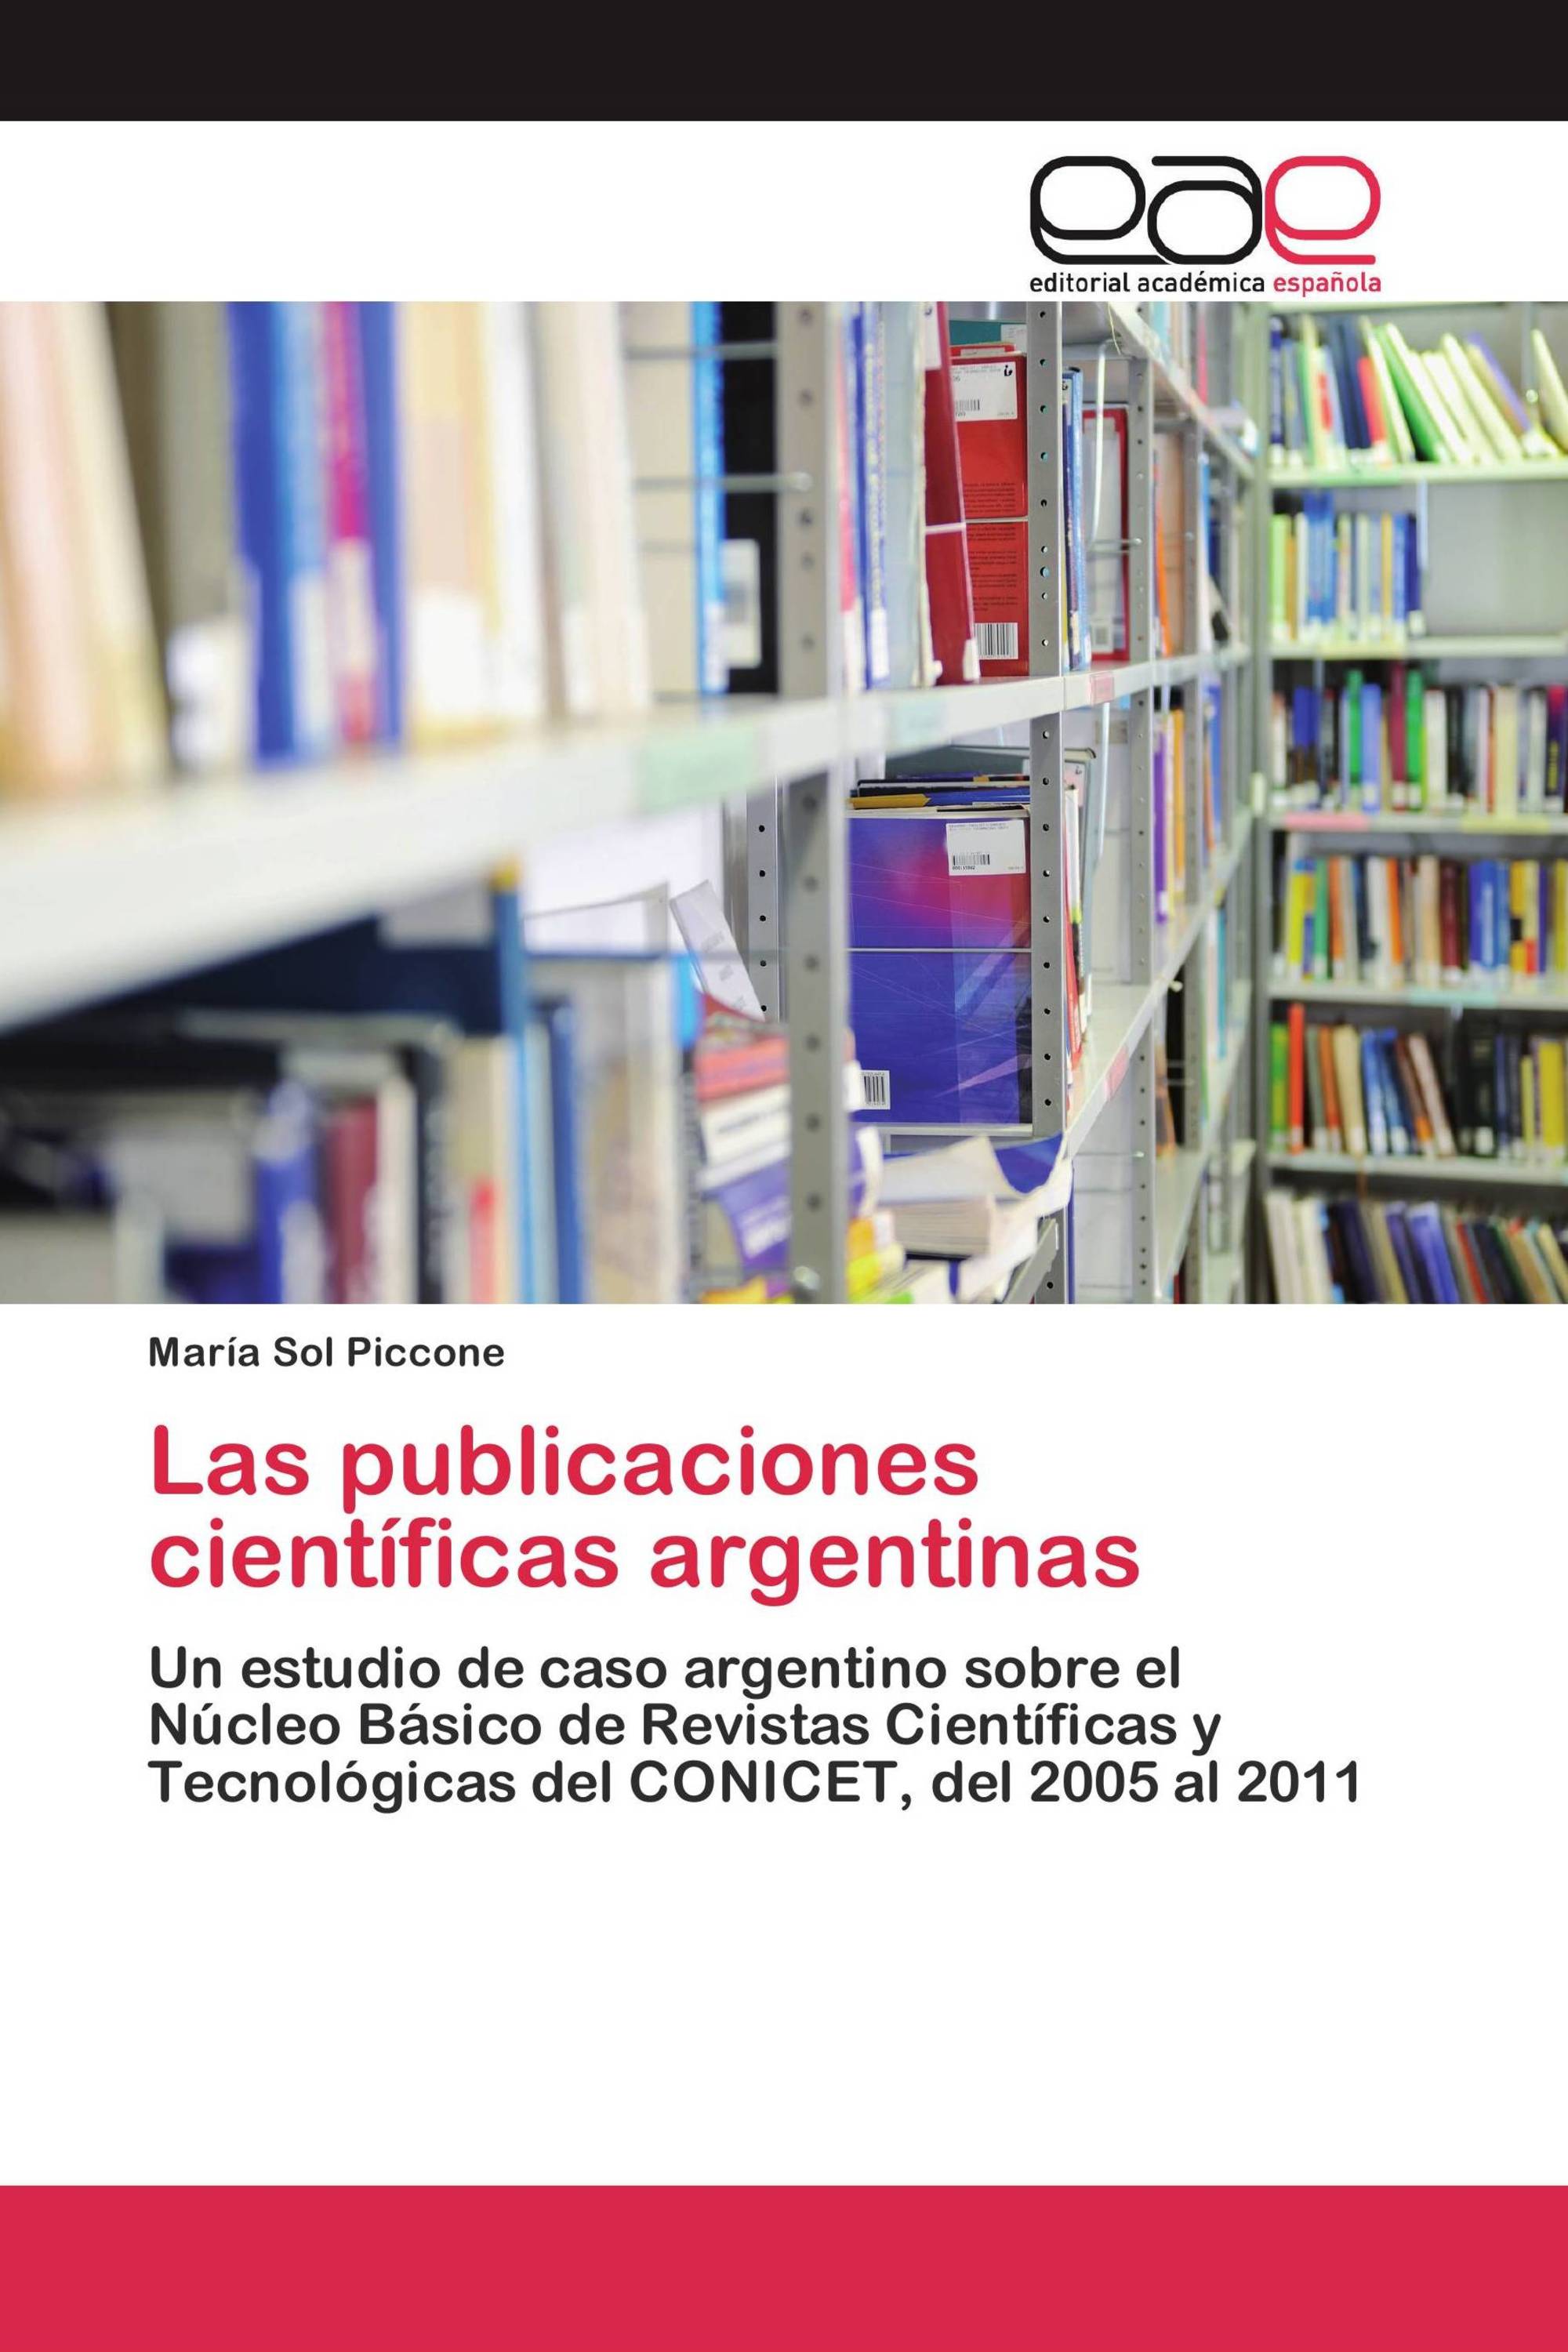 Las publicaciones científicas argentinas